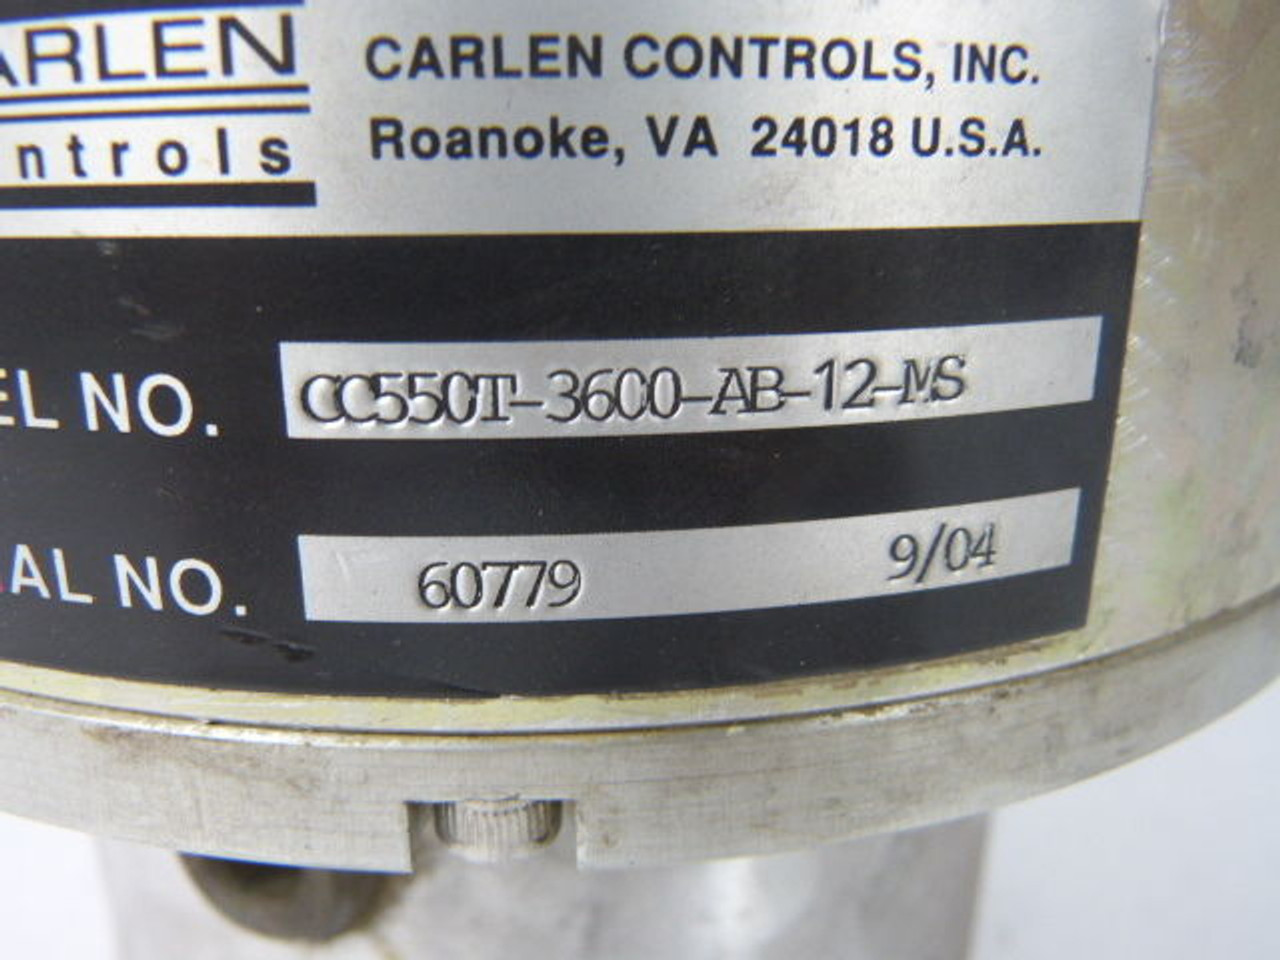 Carlen Controls CC550T-3600-AB-12-MS Encoder Motor USED